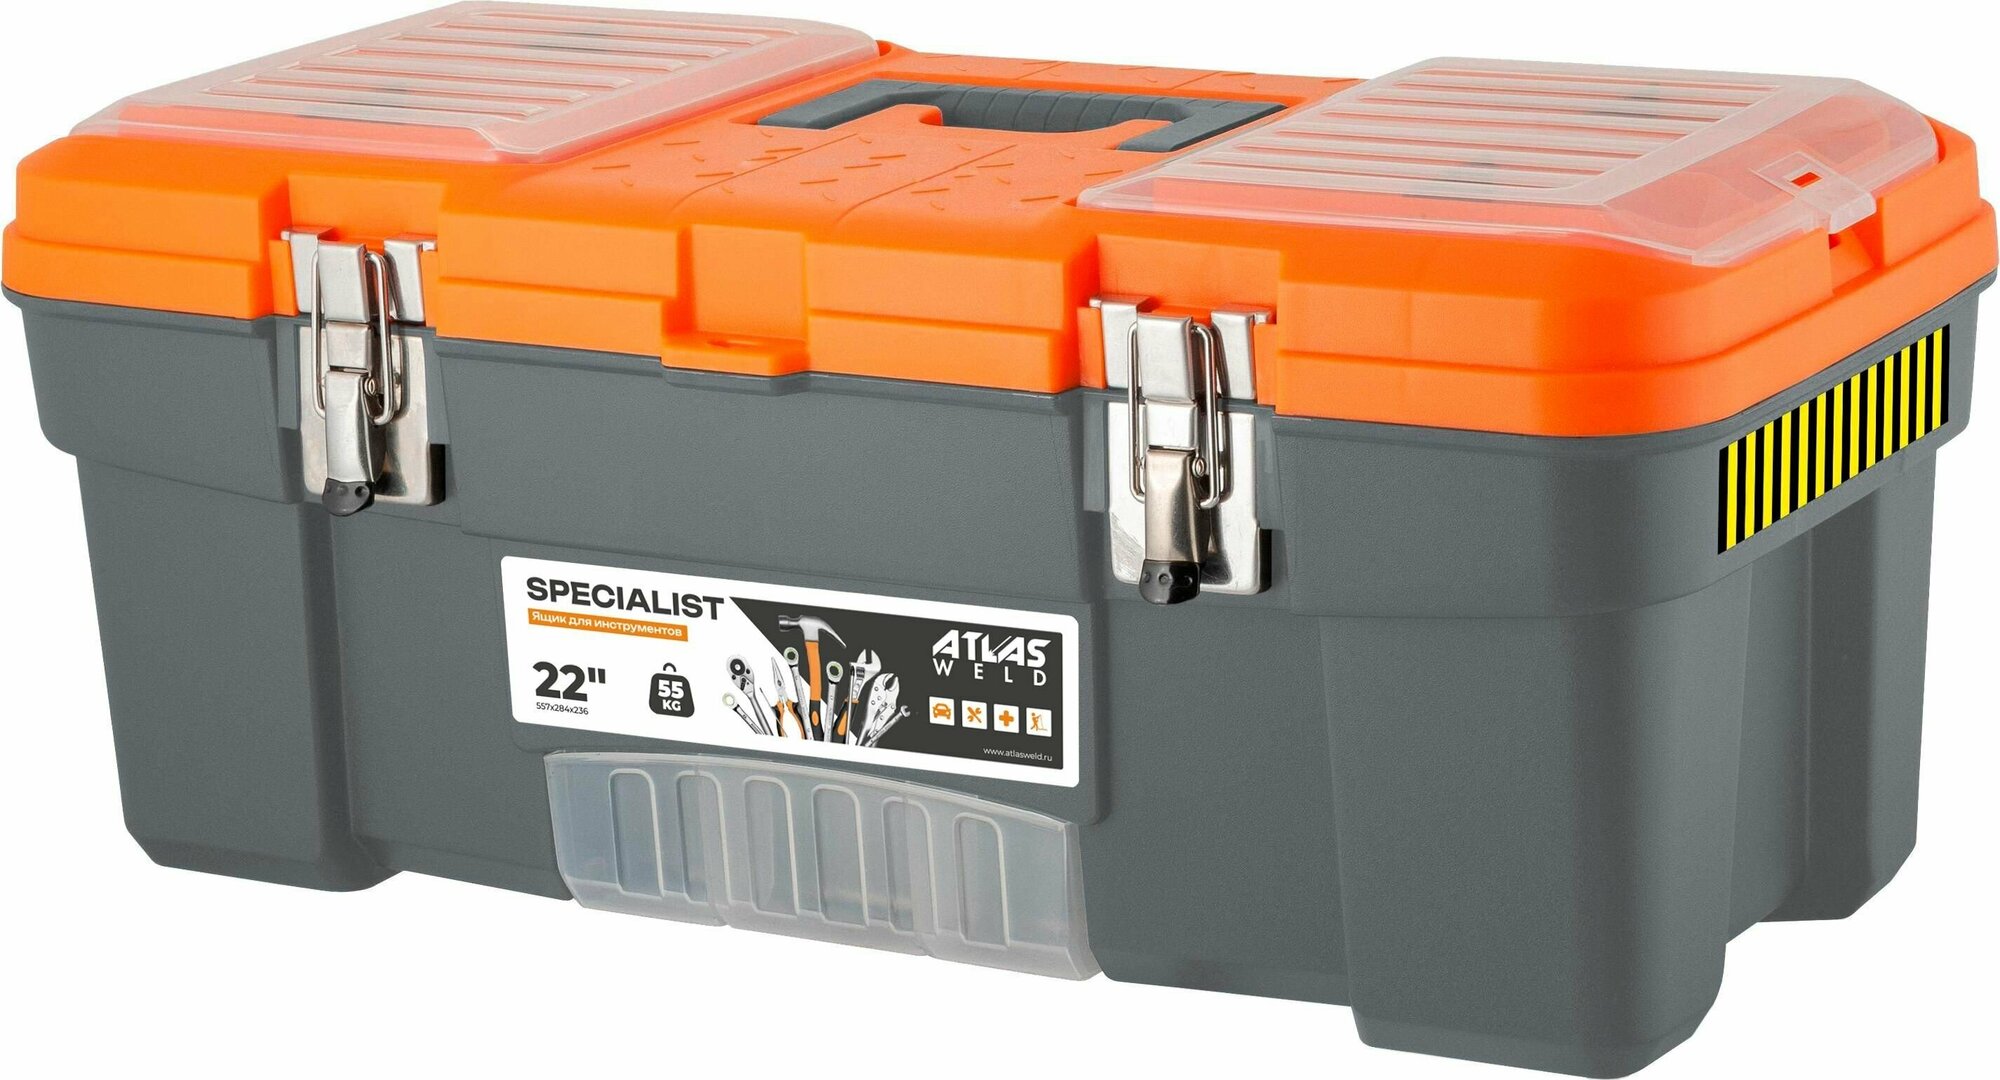 Ящик для инструментов Specialist 22" с металлическими замками серо-свинцовый/оранжевый 557х284х236